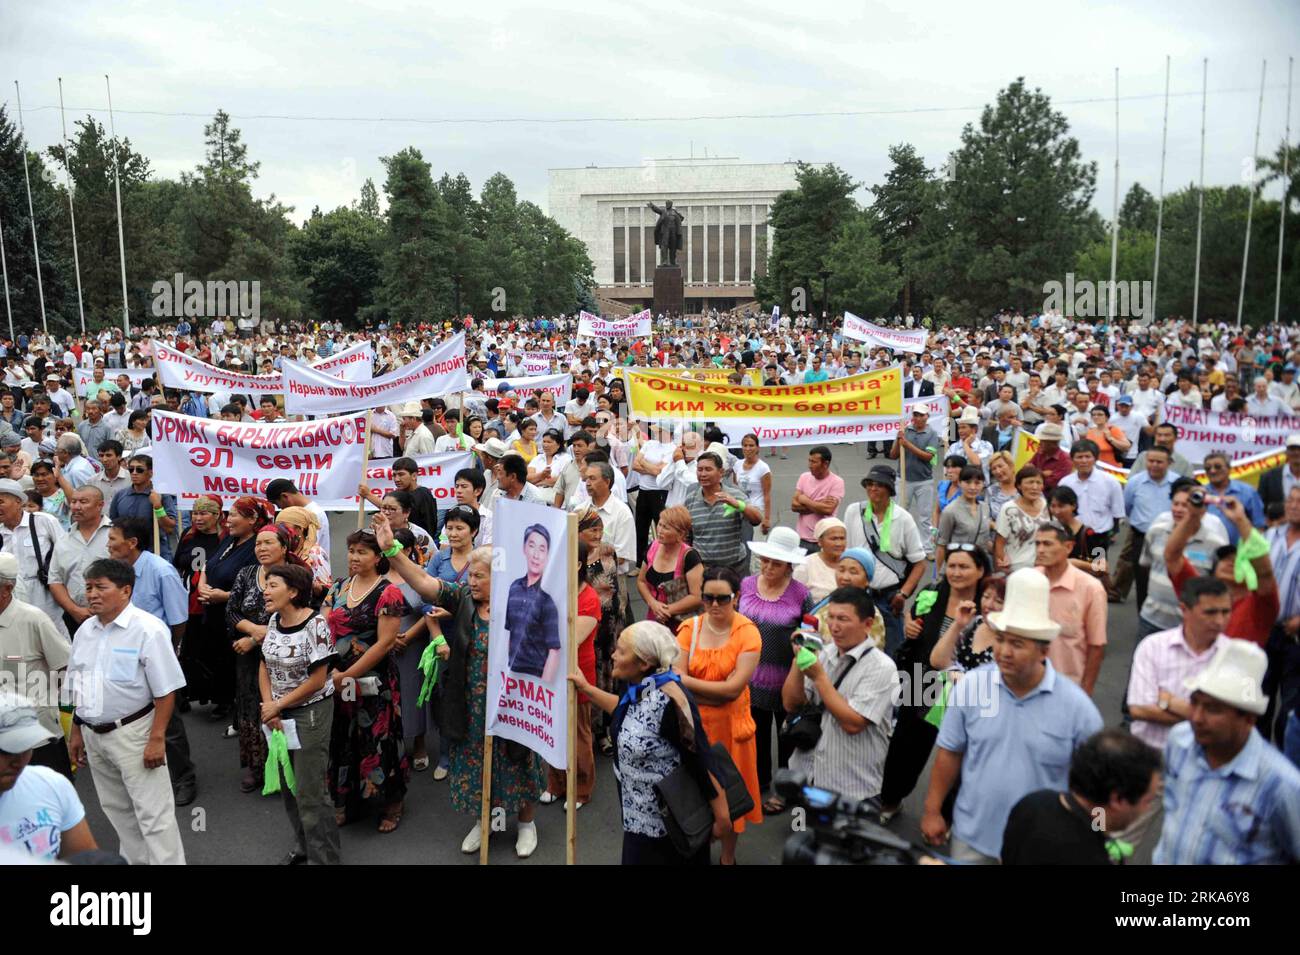 Bildnummer : 54278871 Datum : 05.08.2010 Copyright : imago/Xinhua les partisans du leader de l'opposition kirghize Urmat Baryktabasov assistent à une manifestation à Bichkek, capitale du Kirghizistan, le 5 août 2010. La police kirghize a été mobilisée jeudi pour disperser les manifestants antigouvernementaux à l'extérieur de la capitale, Bichkek. La présidente par intérim Roza Otunbayeva a déclaré jeudi que Baryktabasov avait été arrêté. (Xinhua/Sadat) (zcq) KIRGHIZISTAN-BICHKEK-PROTEST-BARYKTABASOV PUBLICATIONxNOTxINxCHN Politik Gesellschaft kbdig xkg 2010 quer o0 Demo Protest Bildnummer 54278871 Date 05 08 2010 Copyright Imago XINHUA S. Banque D'Images